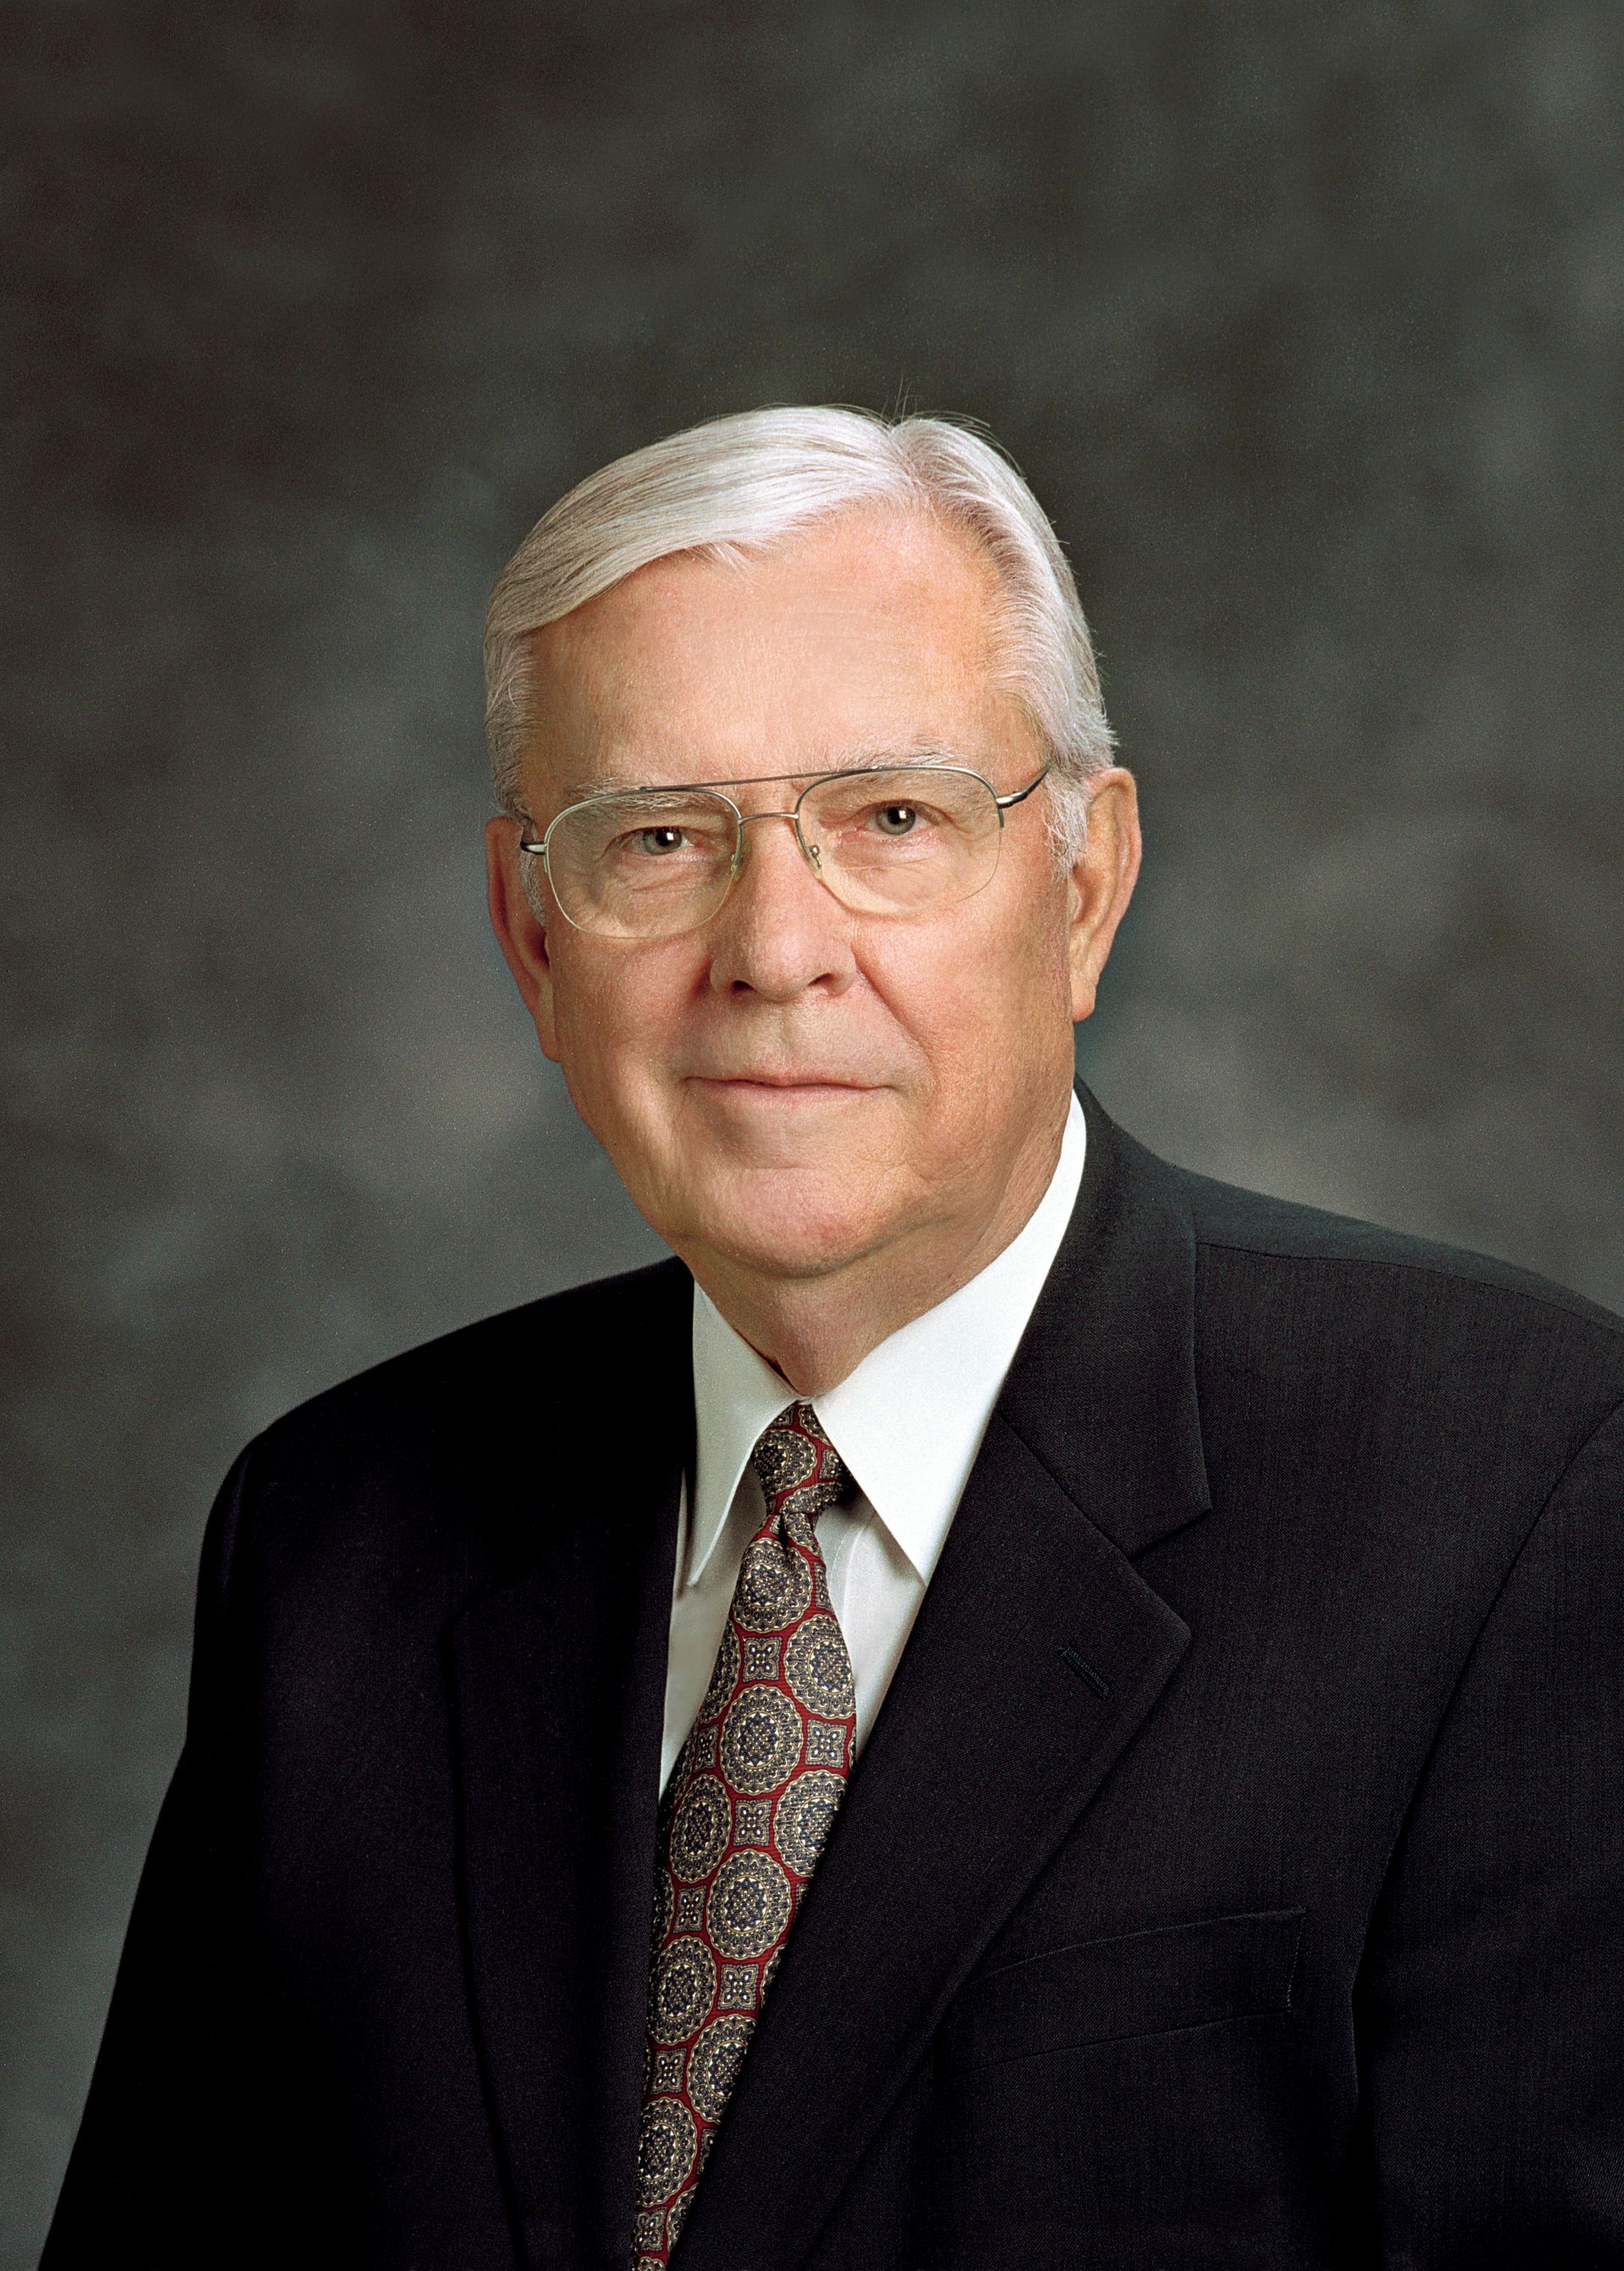 Retrato oficial do presidente M. Russell Ballard, presidente interino do Quórum dos Doze Apóstolos de A Igreja de Jesus Cristo dos Santos dos Últimos Dias.